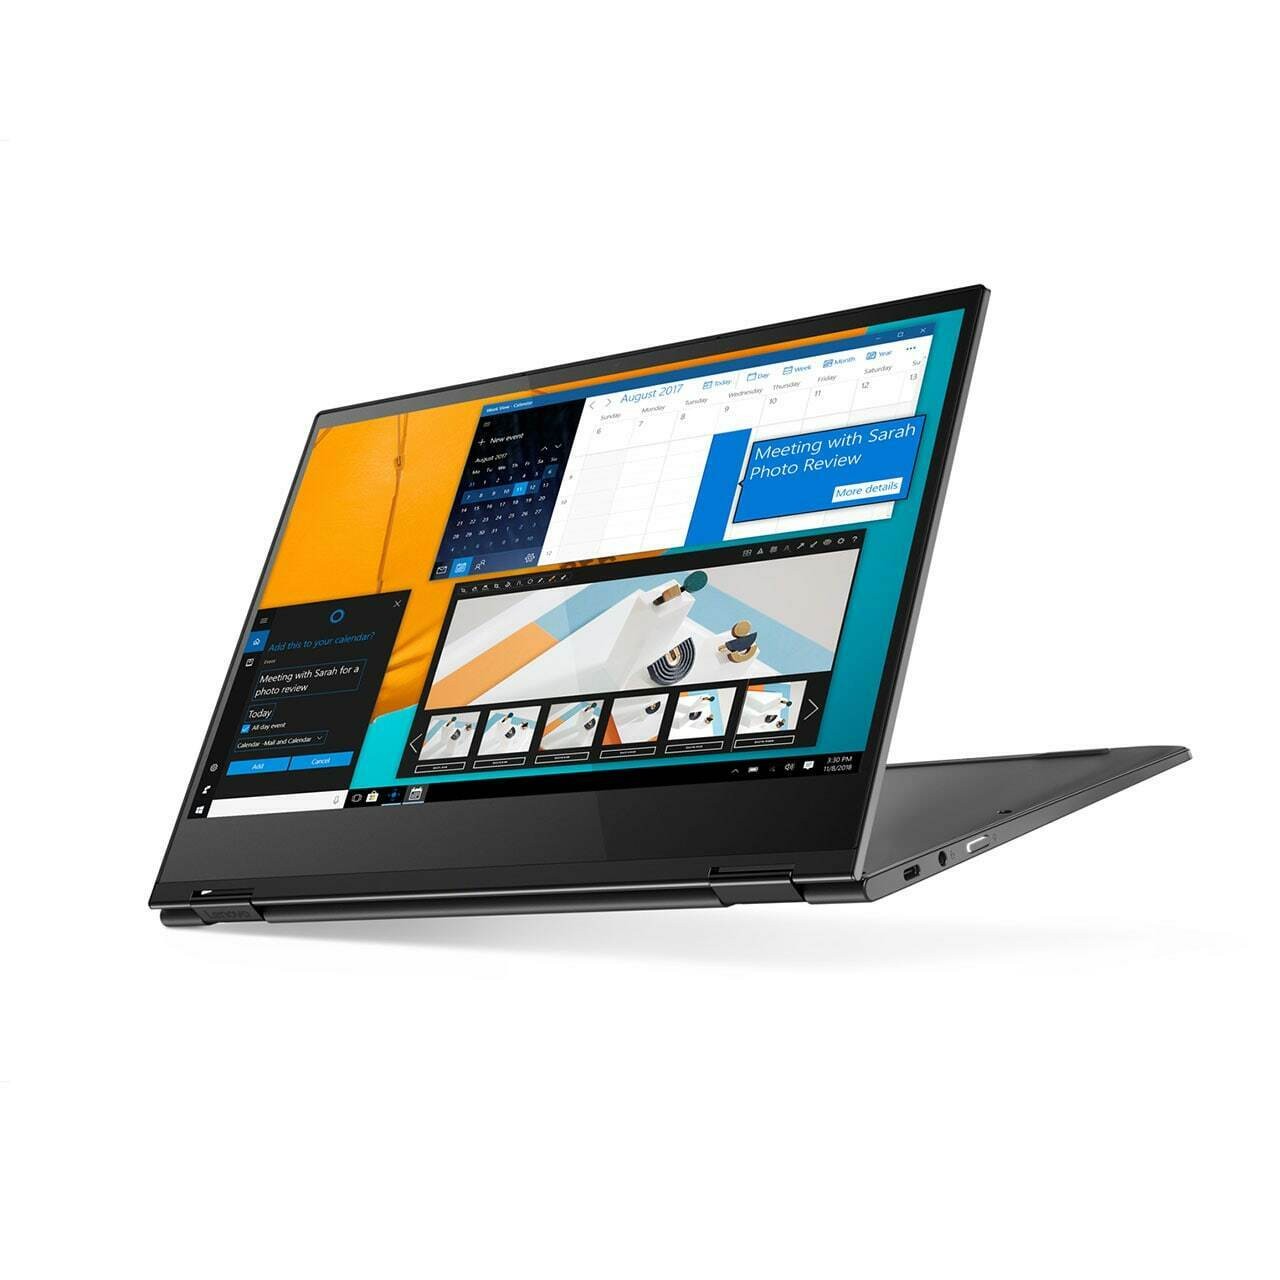 Lenovo Yoga C630 15.6" FHD Touch i3-8130U 2.2GHz 8GB 64GB Chromebook Midnit Blue